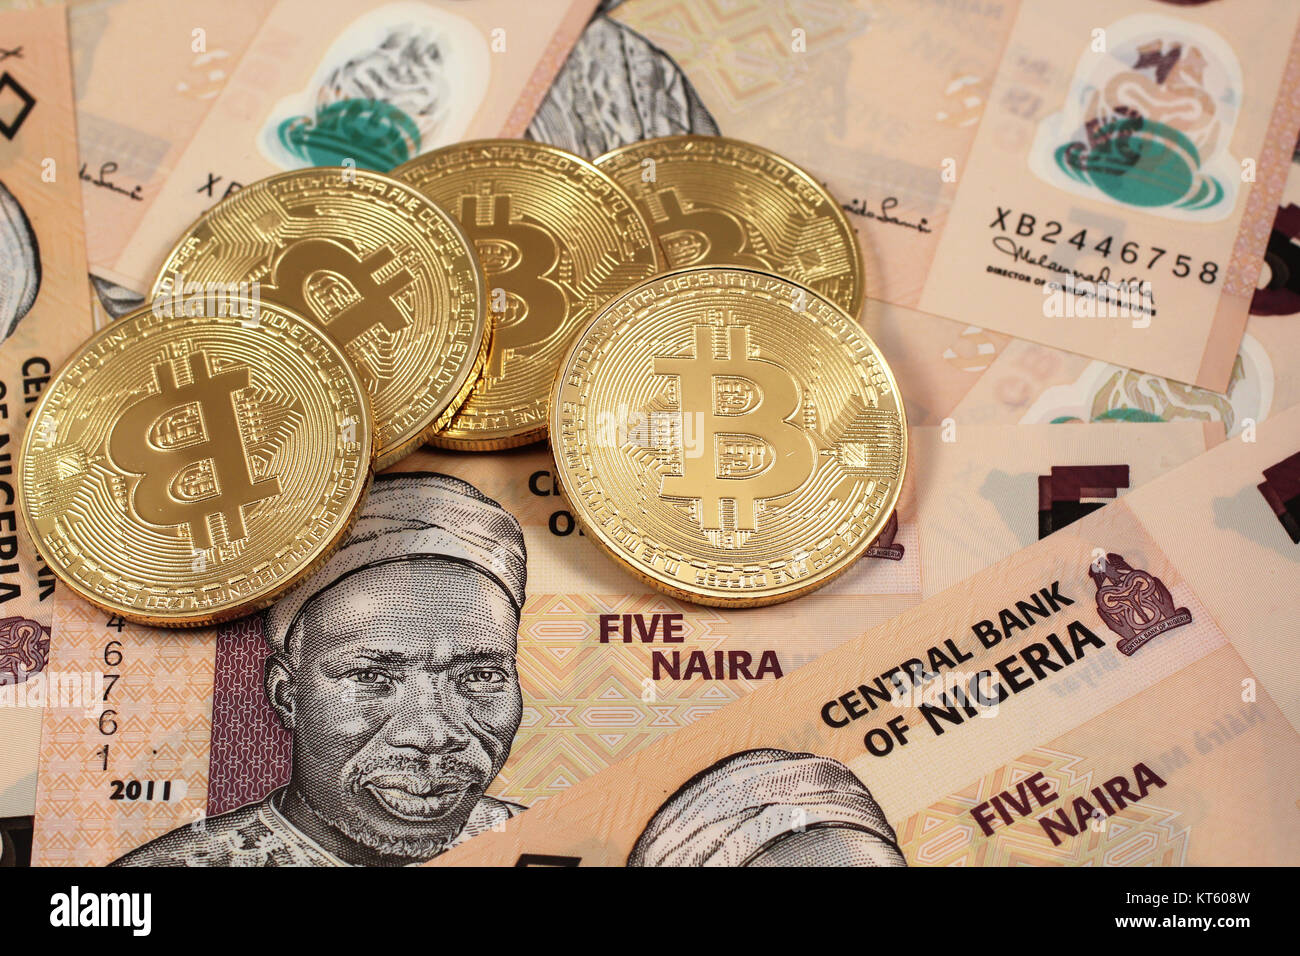 100$ bitcoin to naira